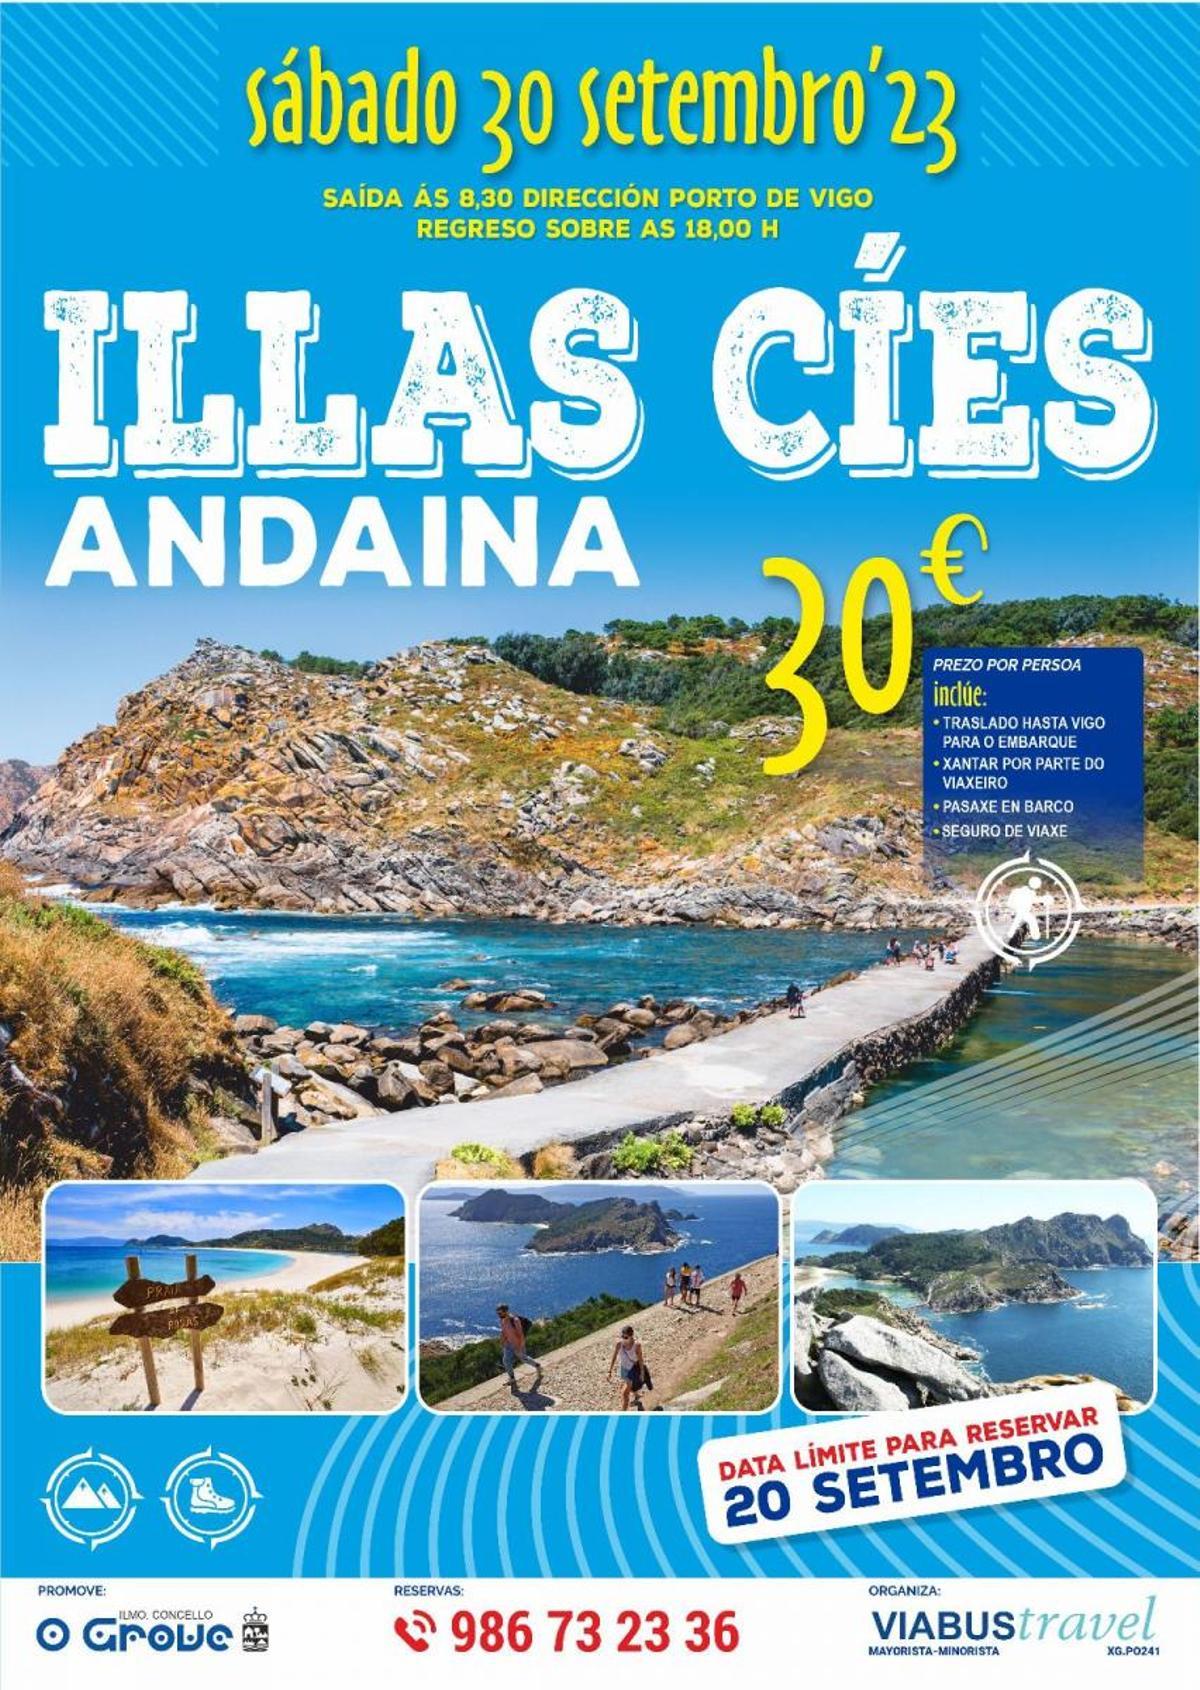 El cartel de la ruta por las islas Cíes.